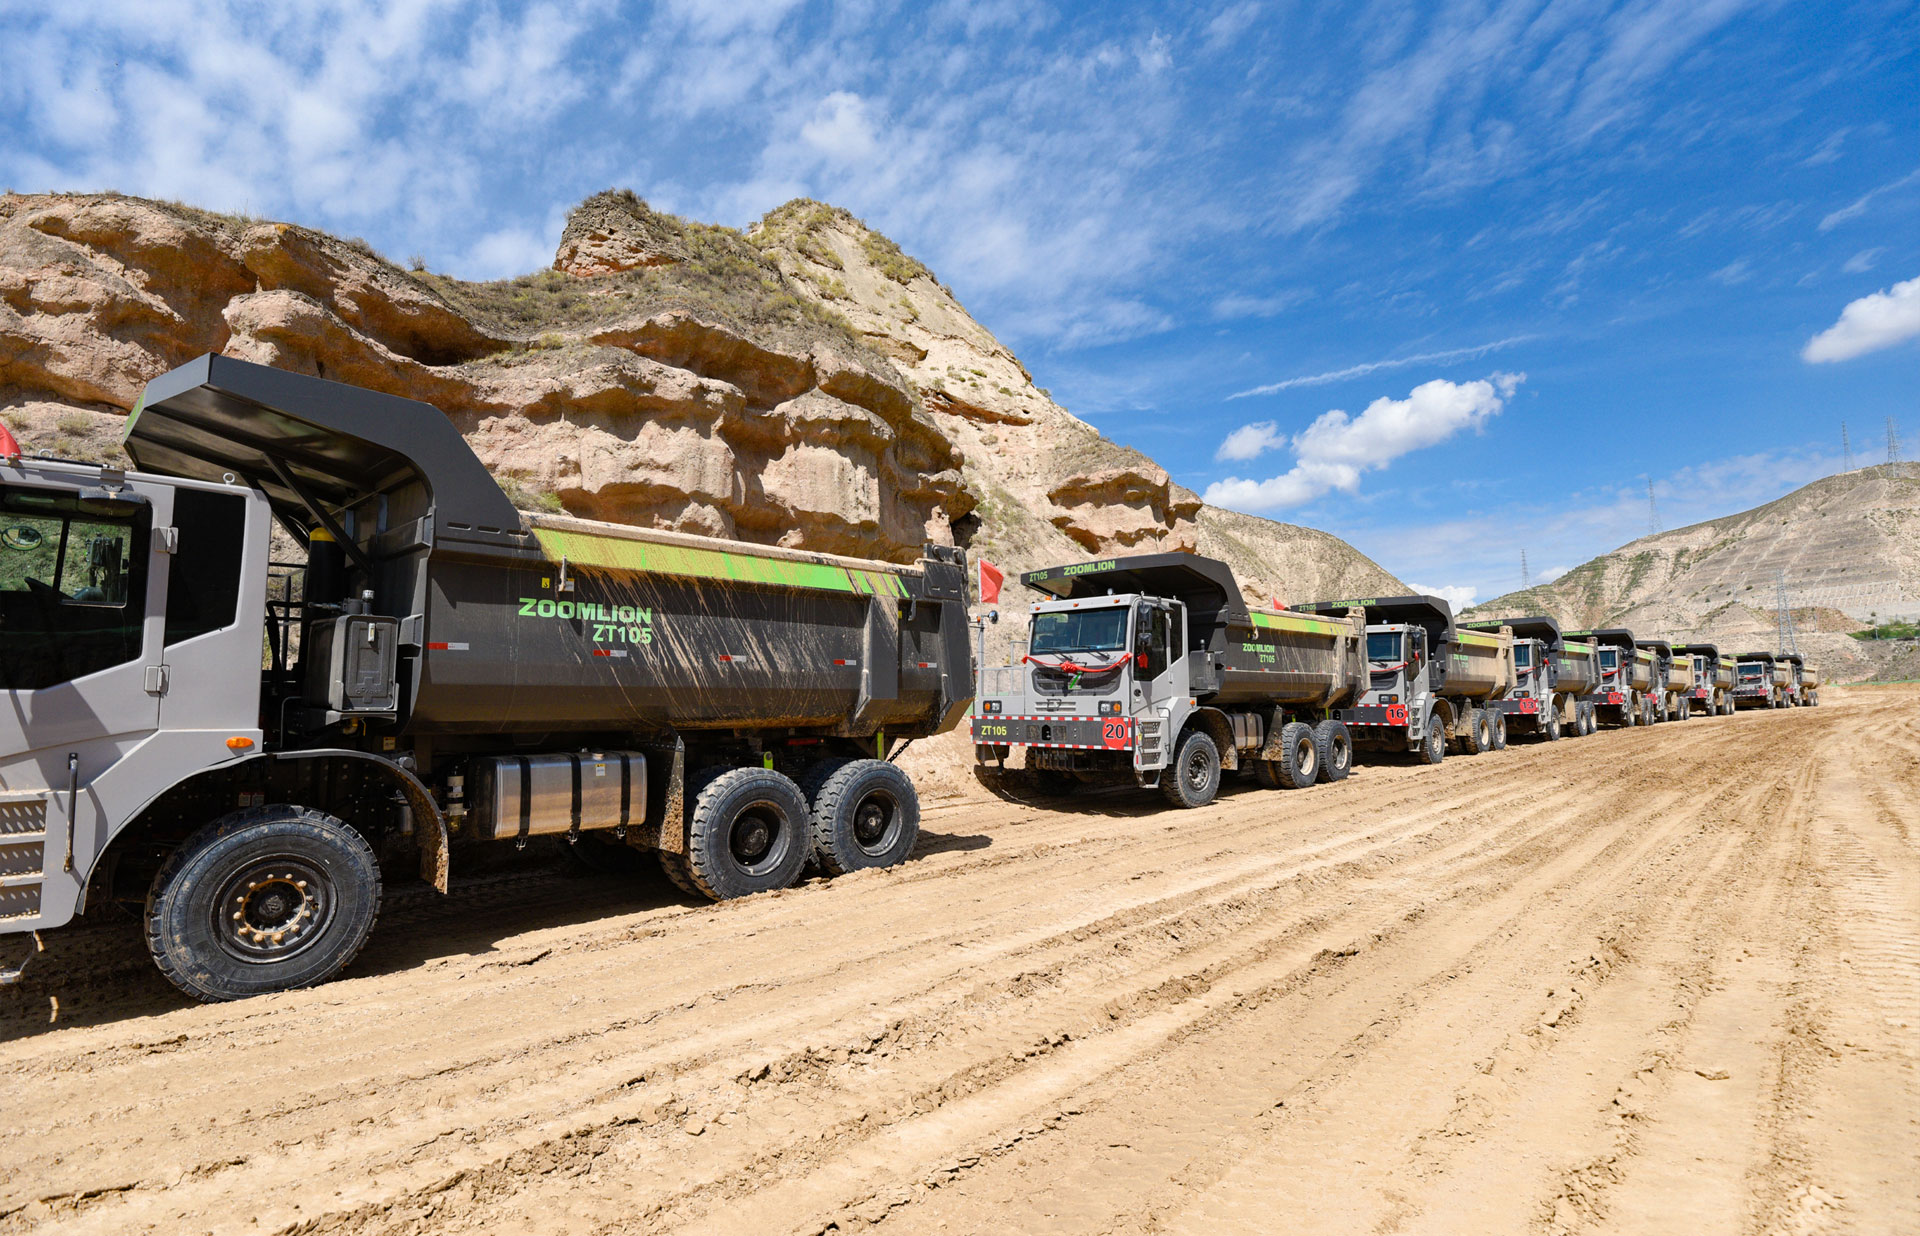 ZOOMLION ZT105 Mining Dump Truck In Asia